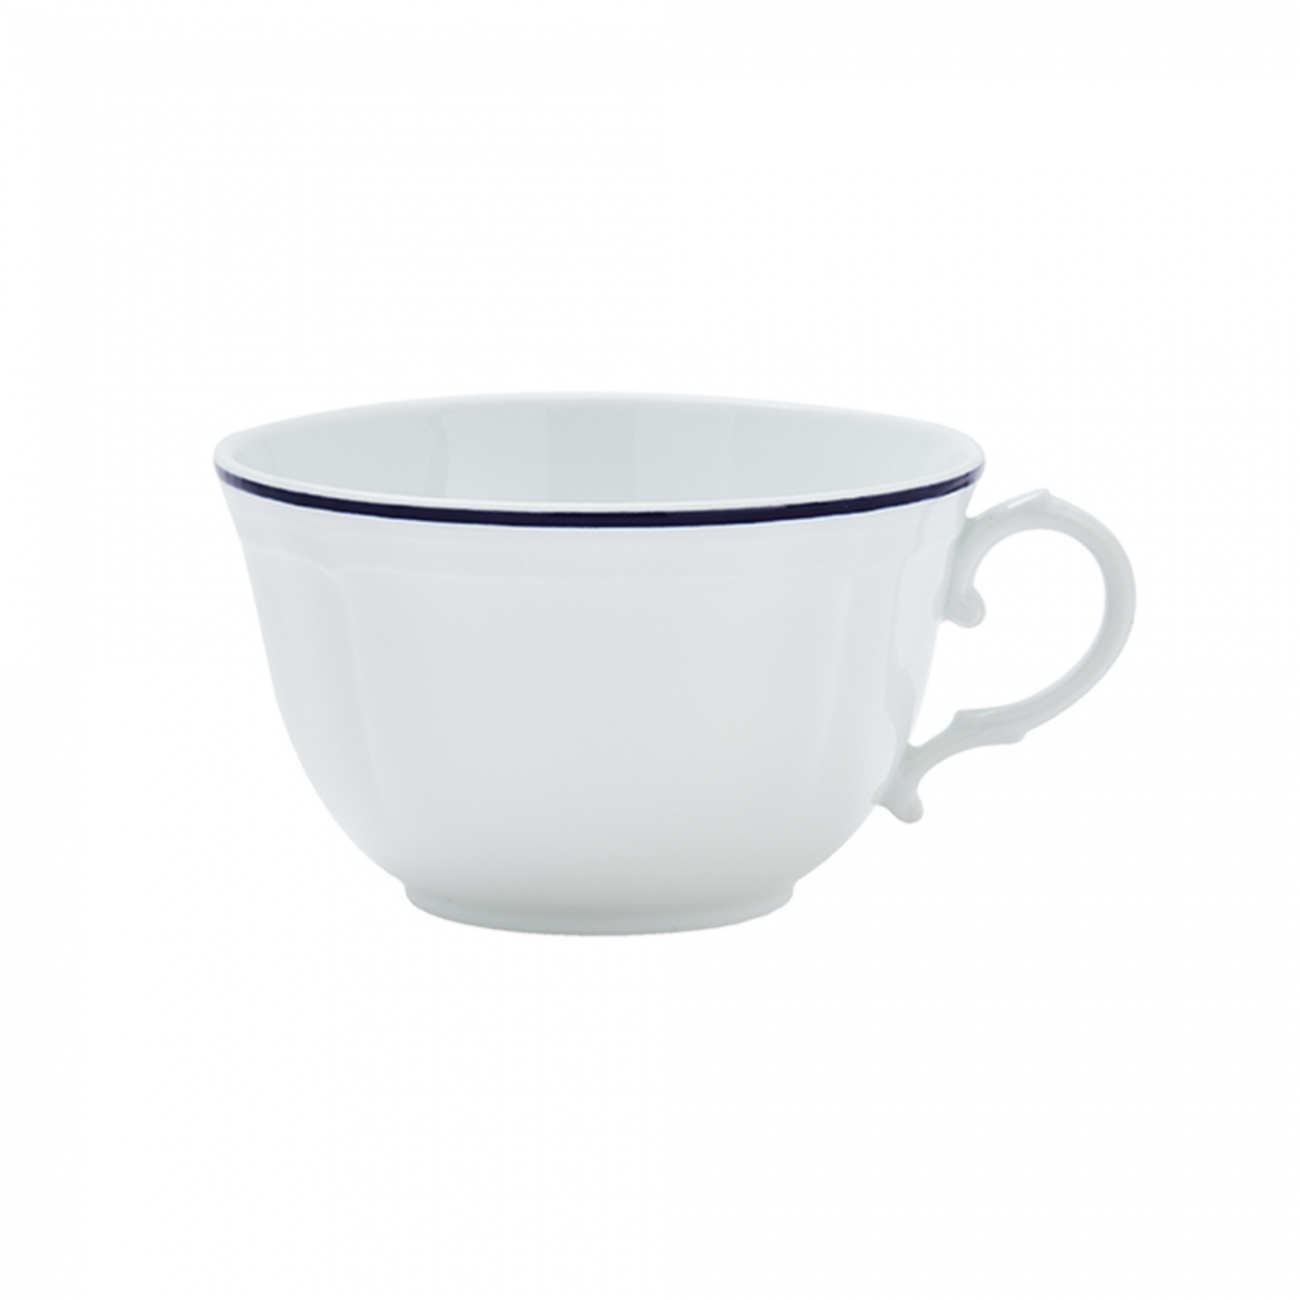 Ginori 1735 Corona Tea cup Set of 6